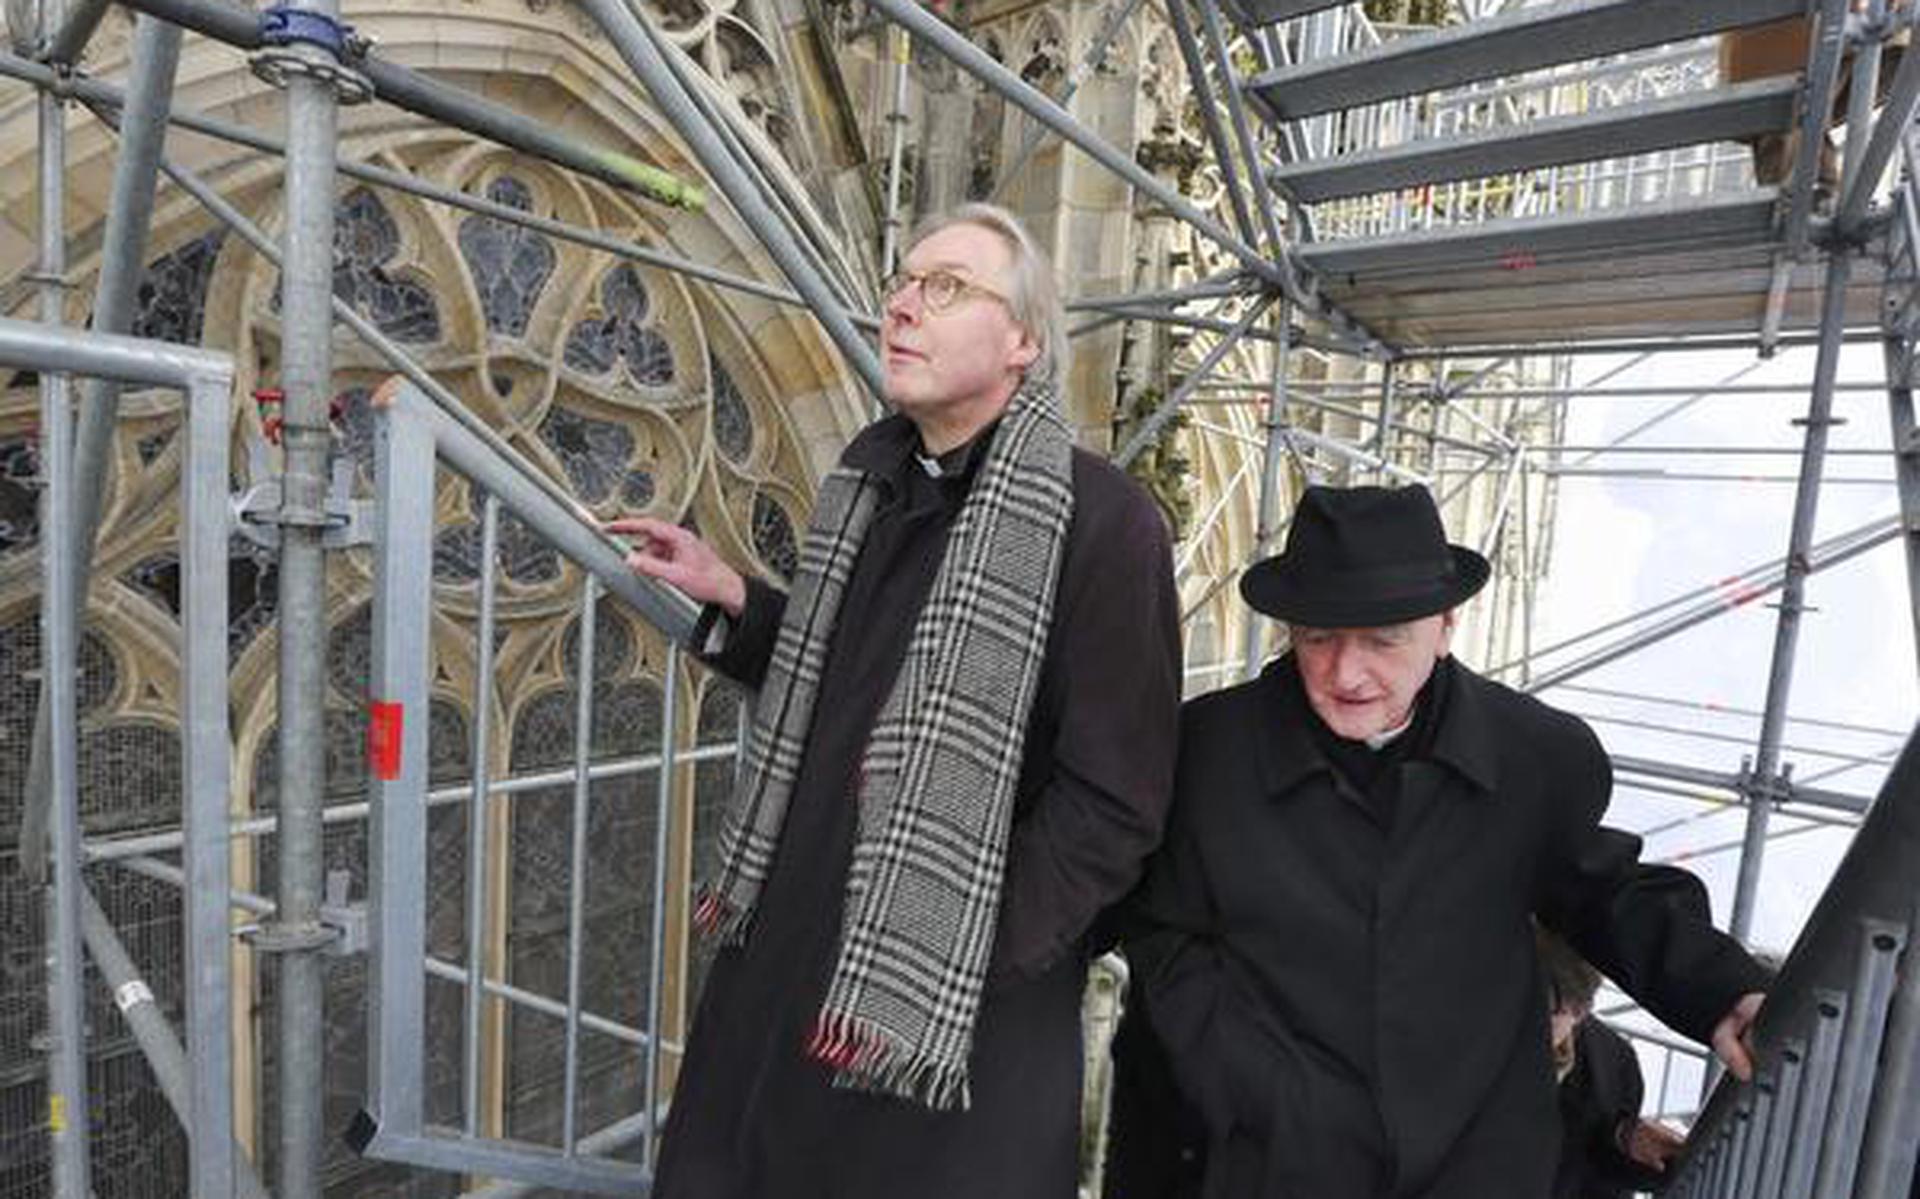 Bisschop Gerard de Korte (links) beklom zaterdag met zijn voorganger Antoon Hurkmans (rechts) de Sint Jankskathedraal in Den Bosch. FOTO ANP/RAMON MANGOLD